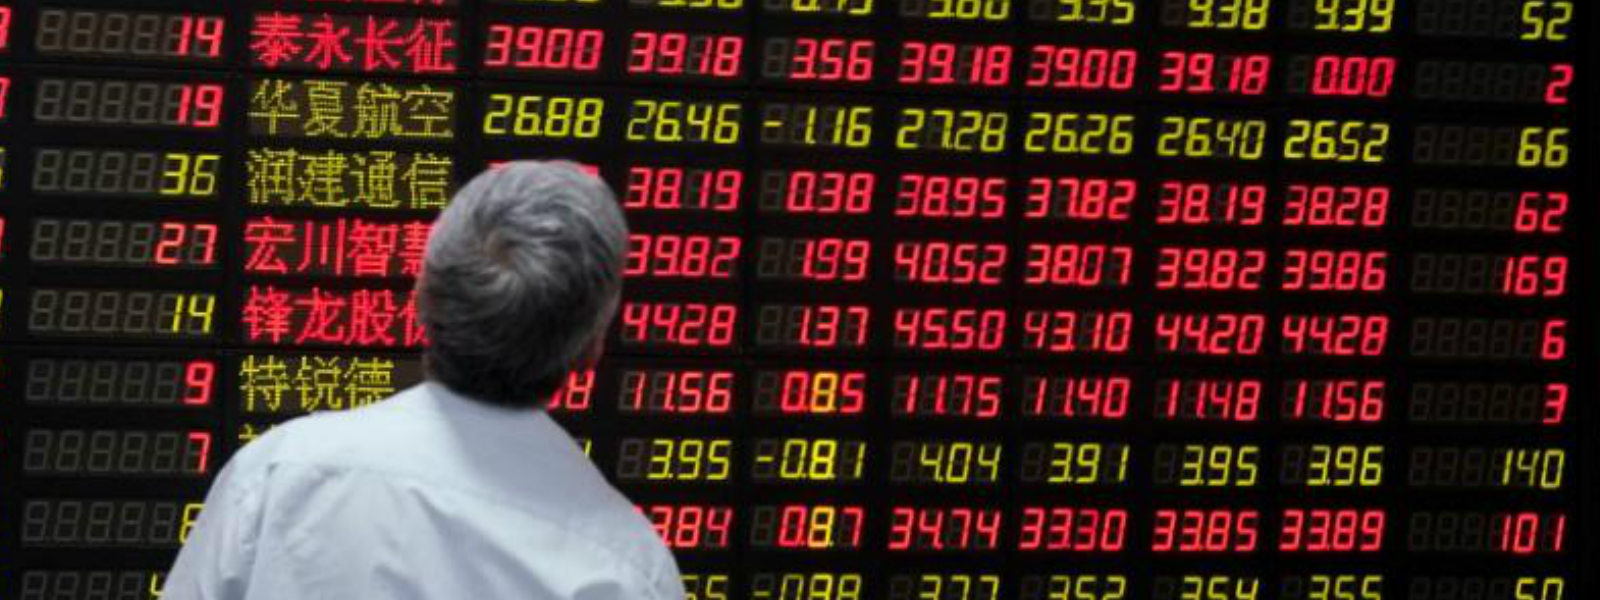 China shares rebound after latest trade war jolt